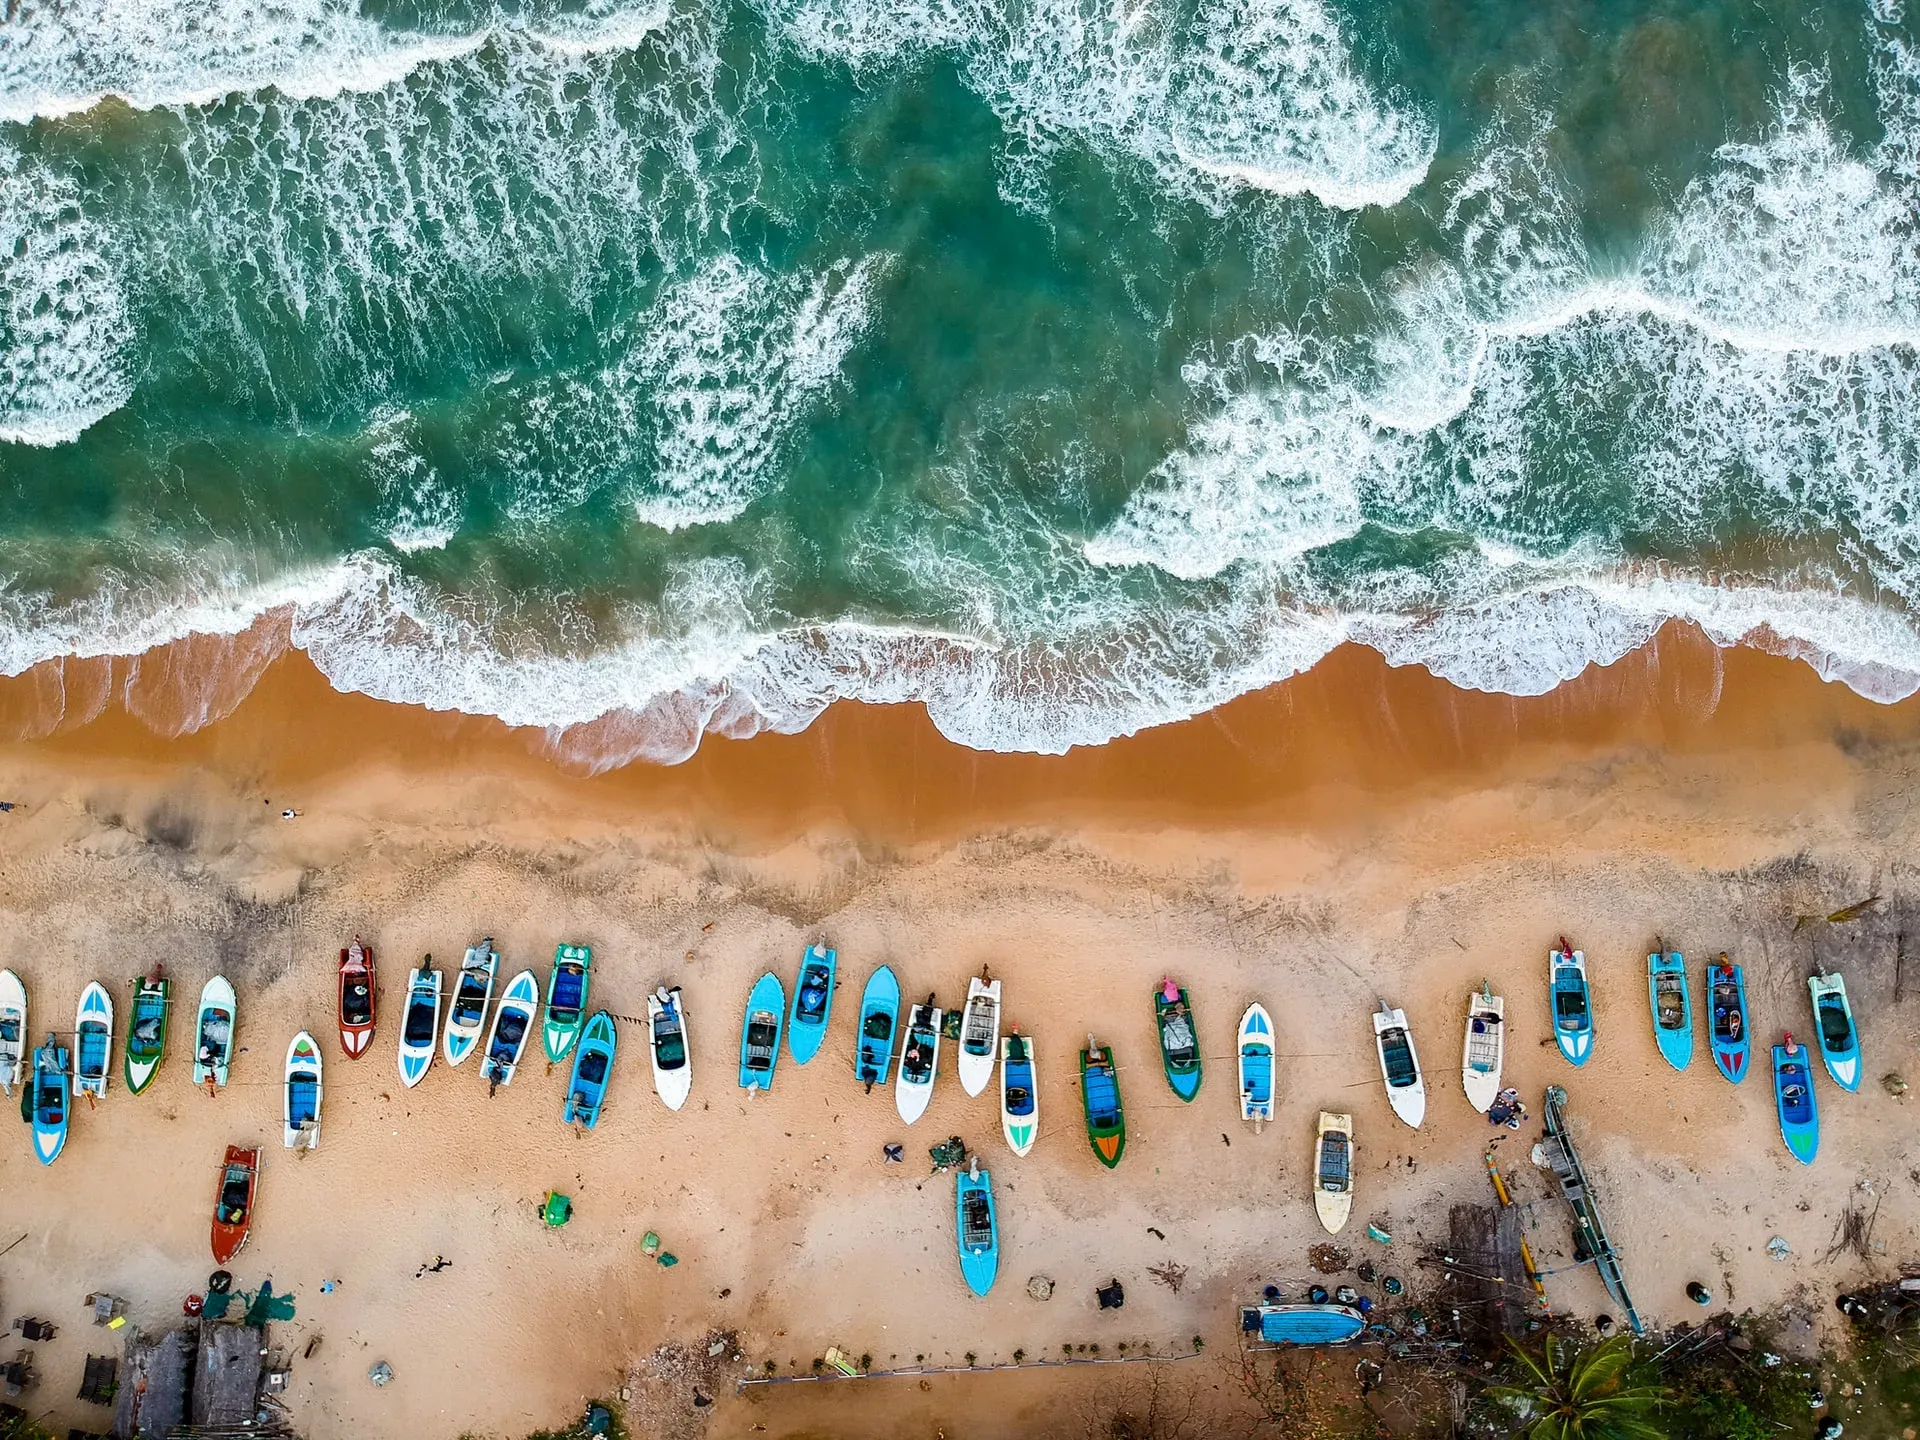 Arugam Bay Beach in Sri Lanka